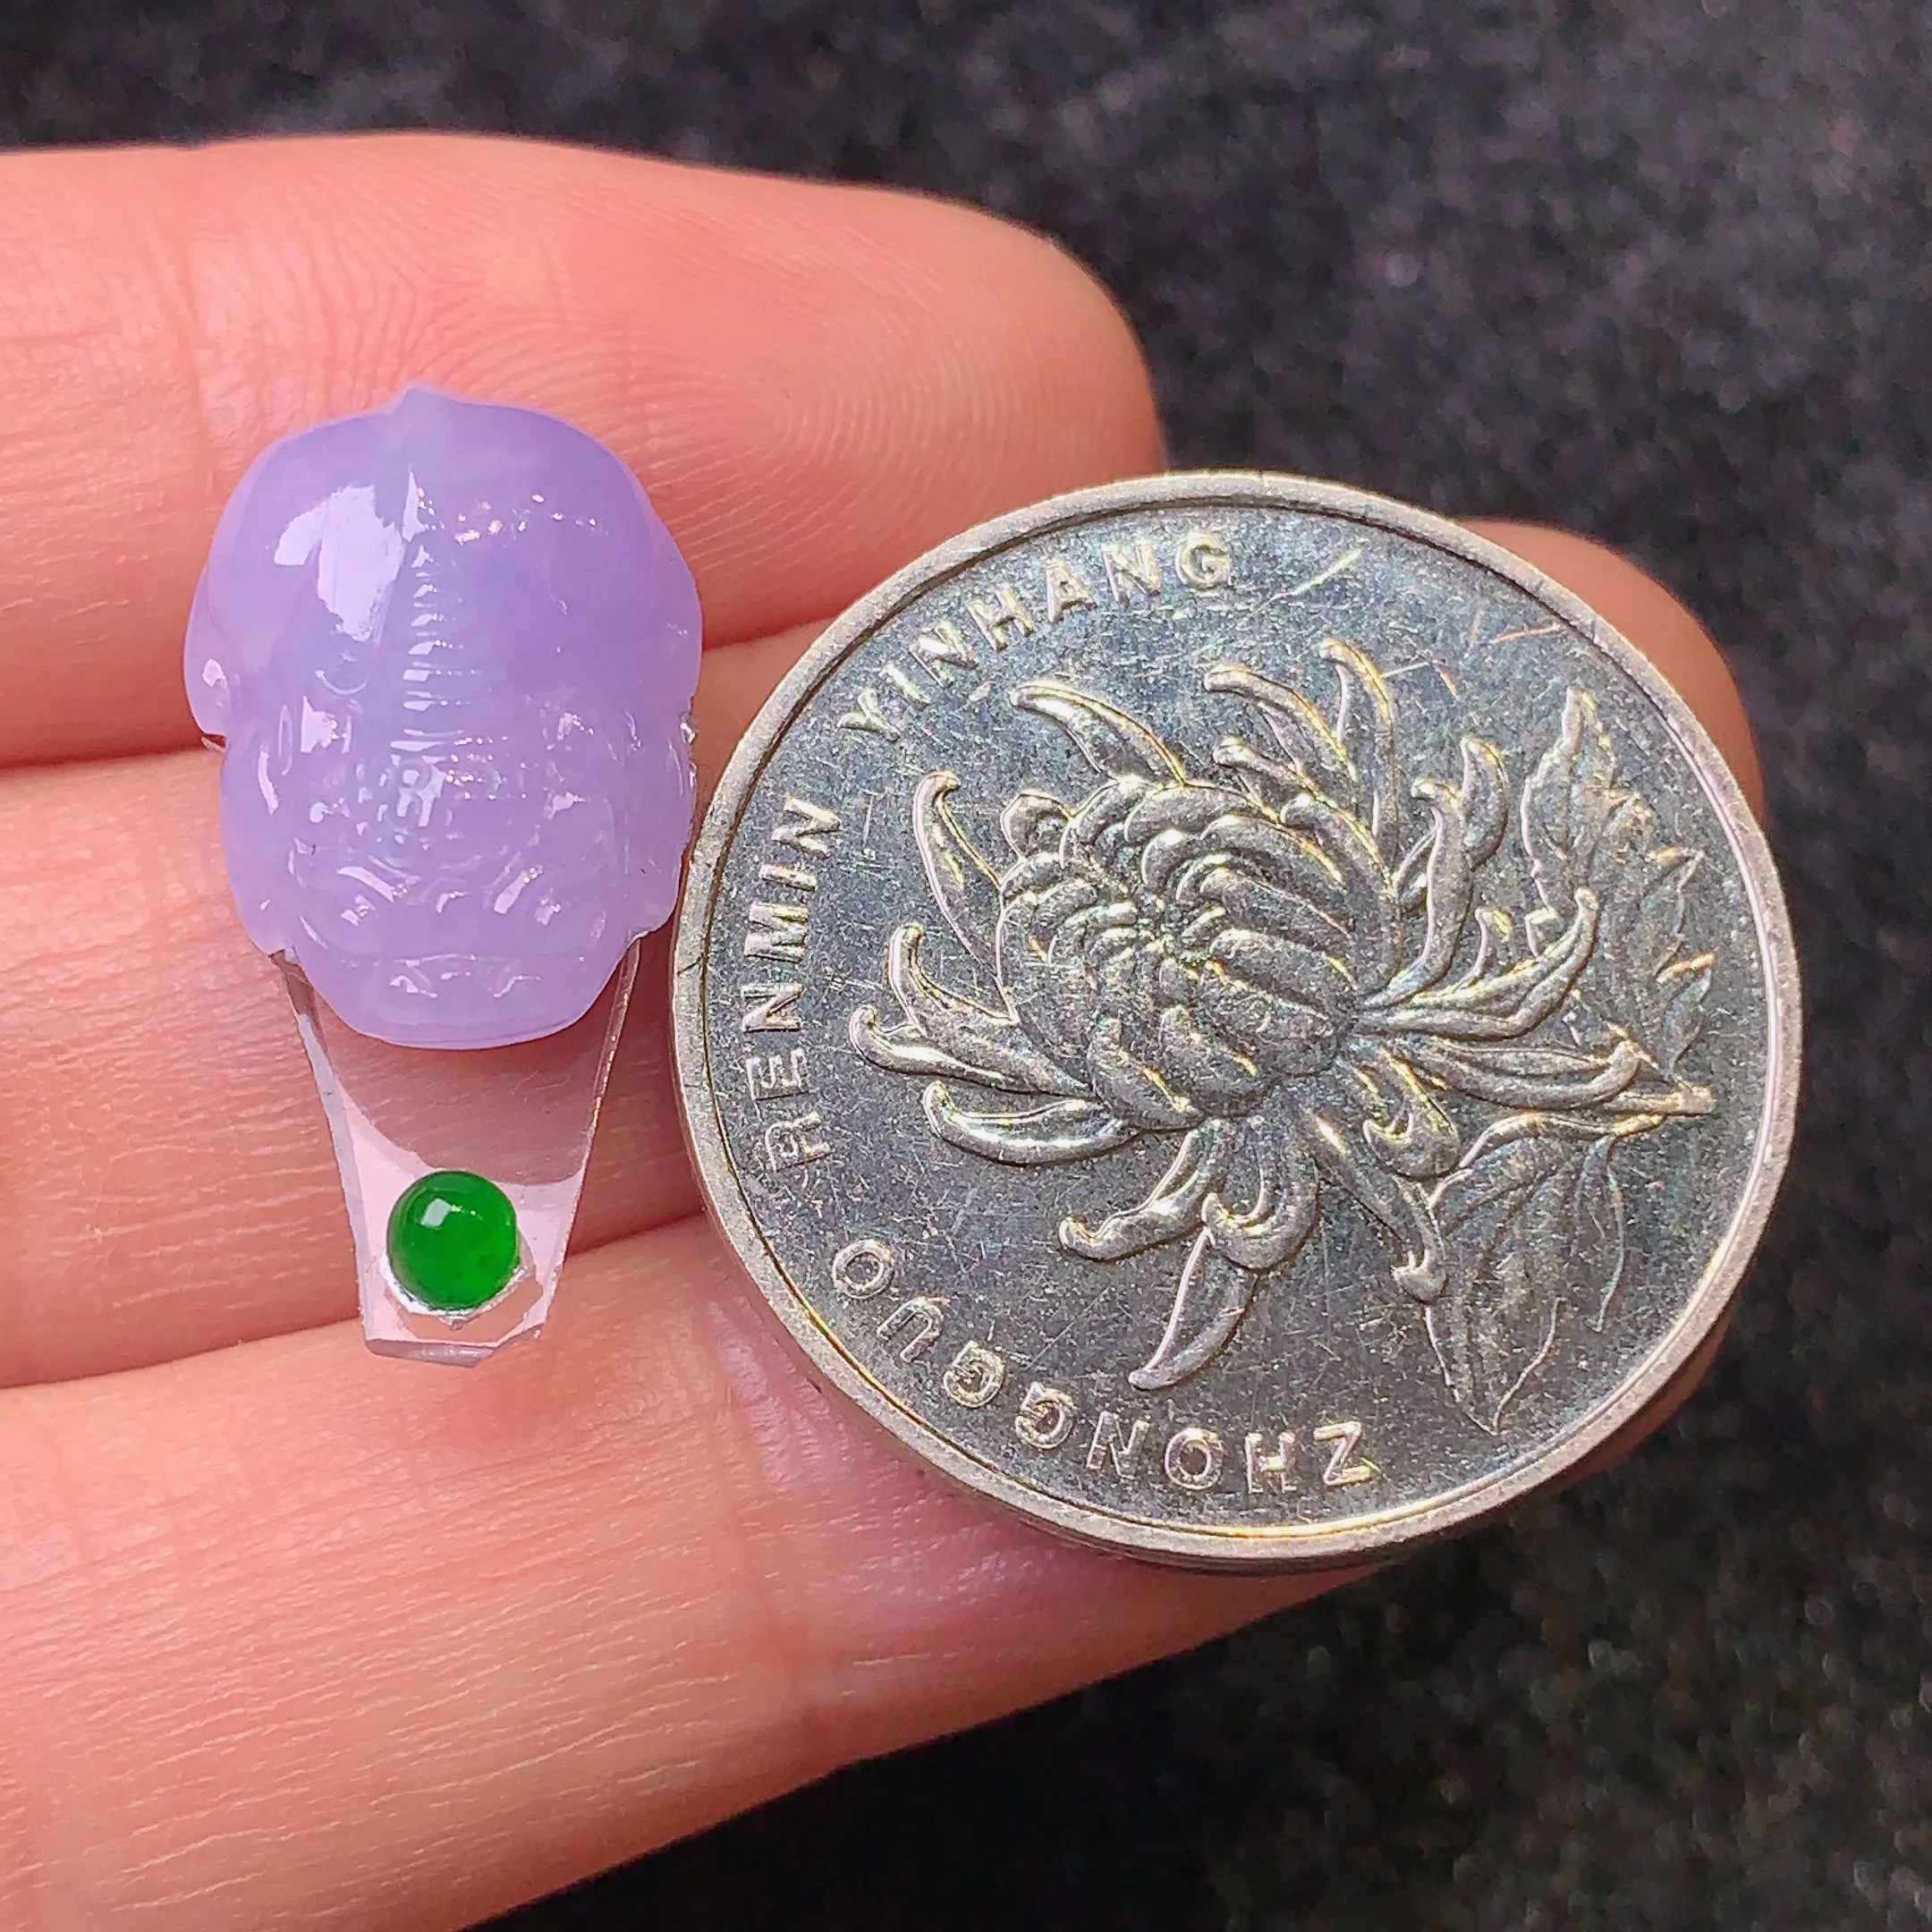 镶嵌款 紫罗兰貔貅 玉质细腻 水润透亮 色泽艳丽 搭配绿色小蛋面 整体尺寸16*11.2*6.1